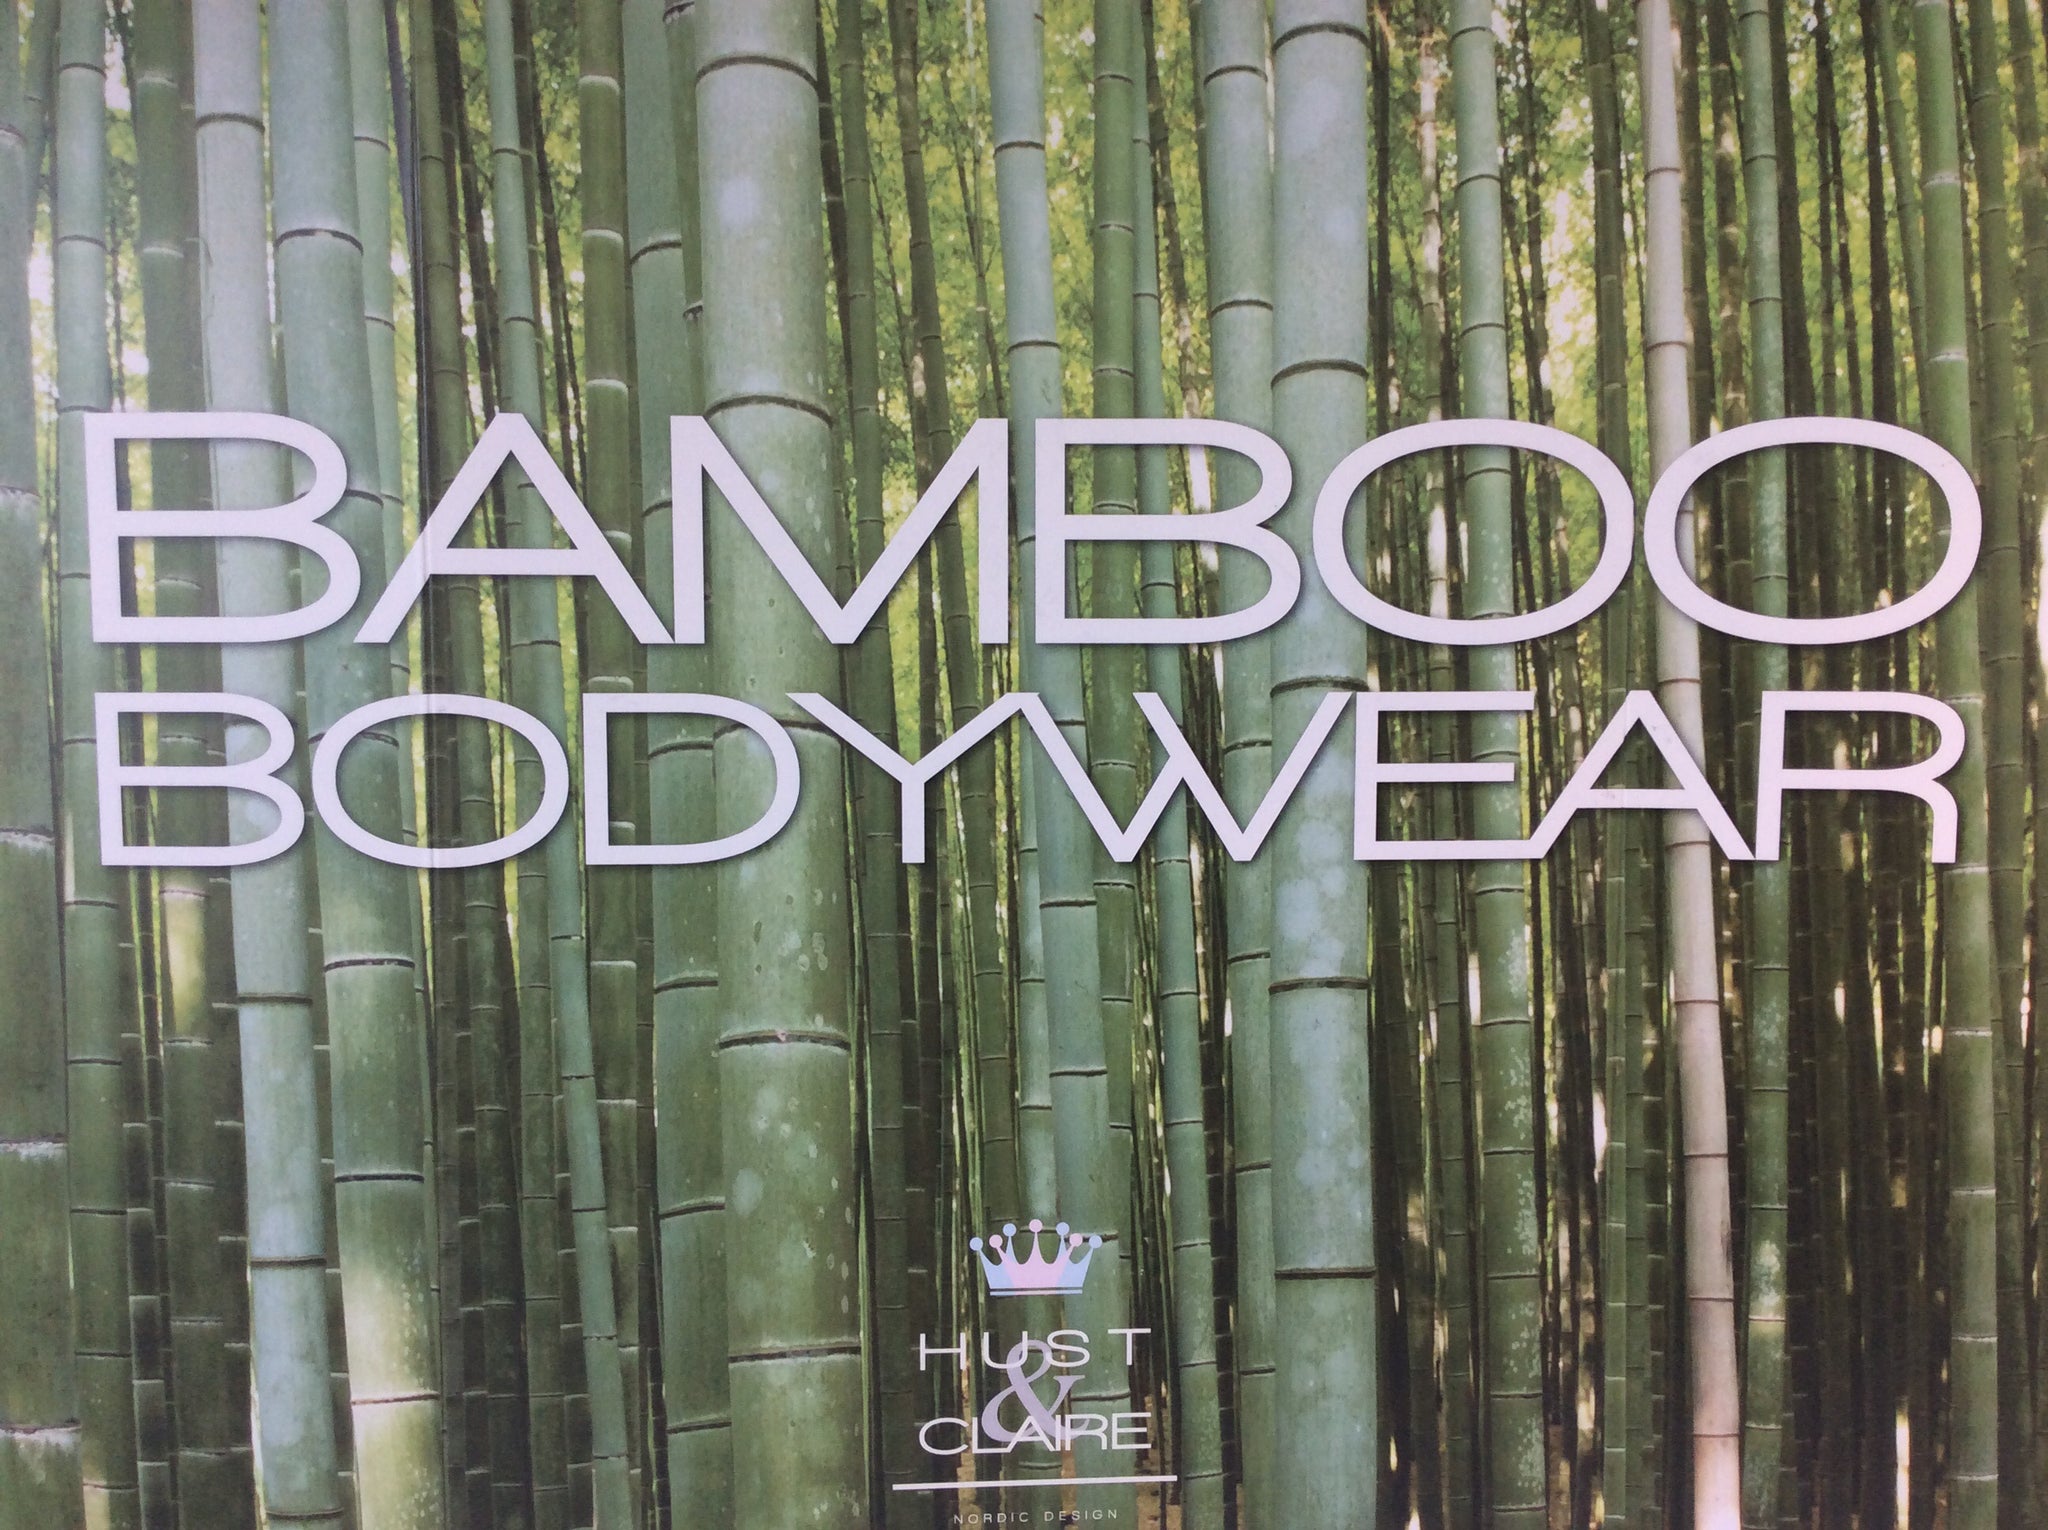 Hust & Claire: i body per bambini in bambù sono ora disponibili nel negozio online di LanaLu